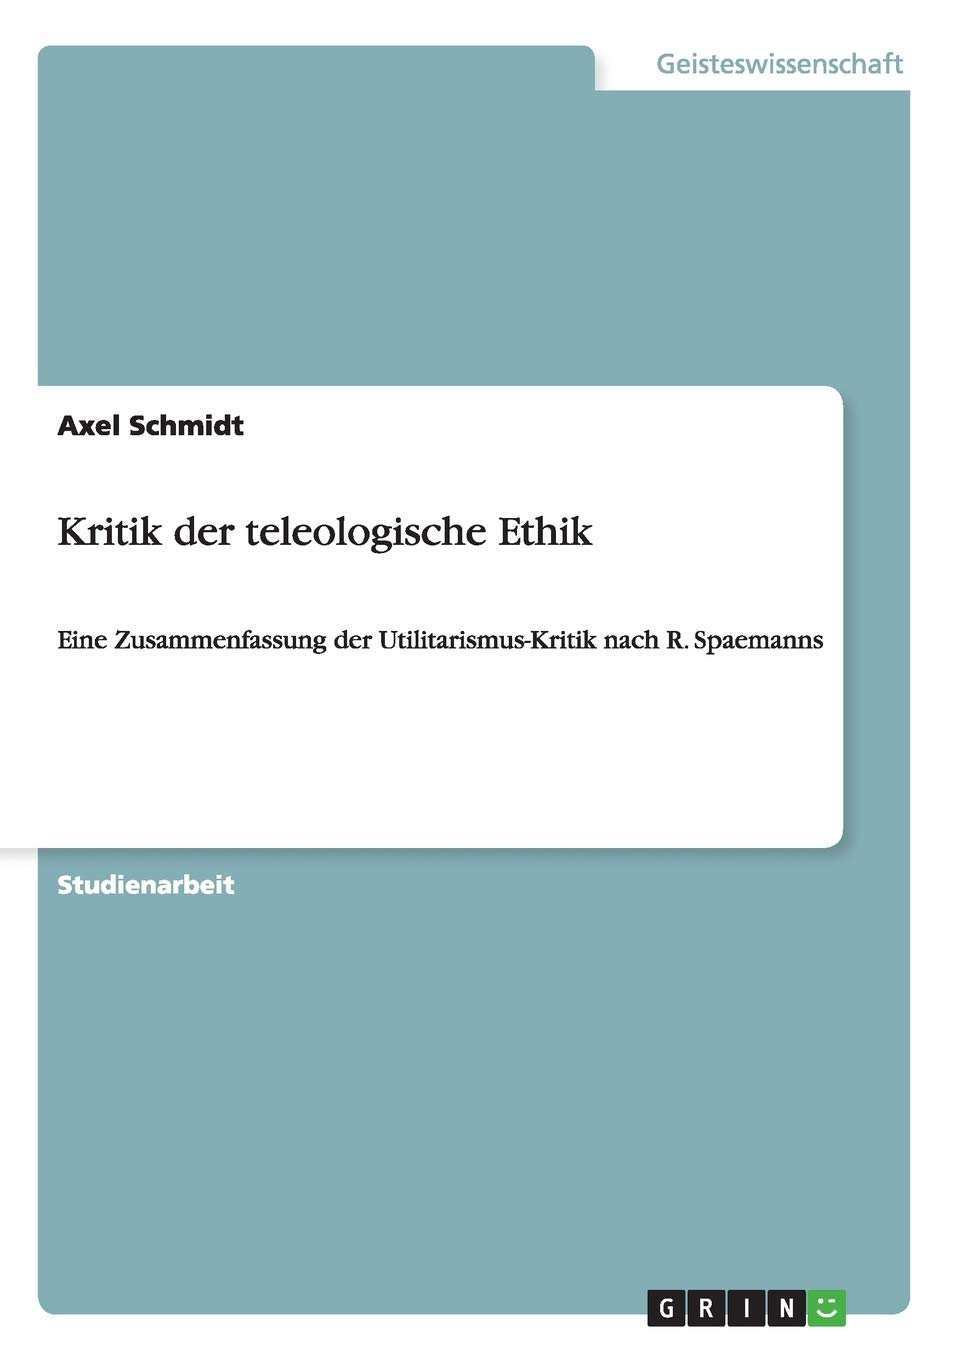 Kritik Der Teleologische Ethik Eine Zusammenfassung Der Utilitarismus Kritik Nach R Spaemanns Amazon De Schmidt Axel Bucher